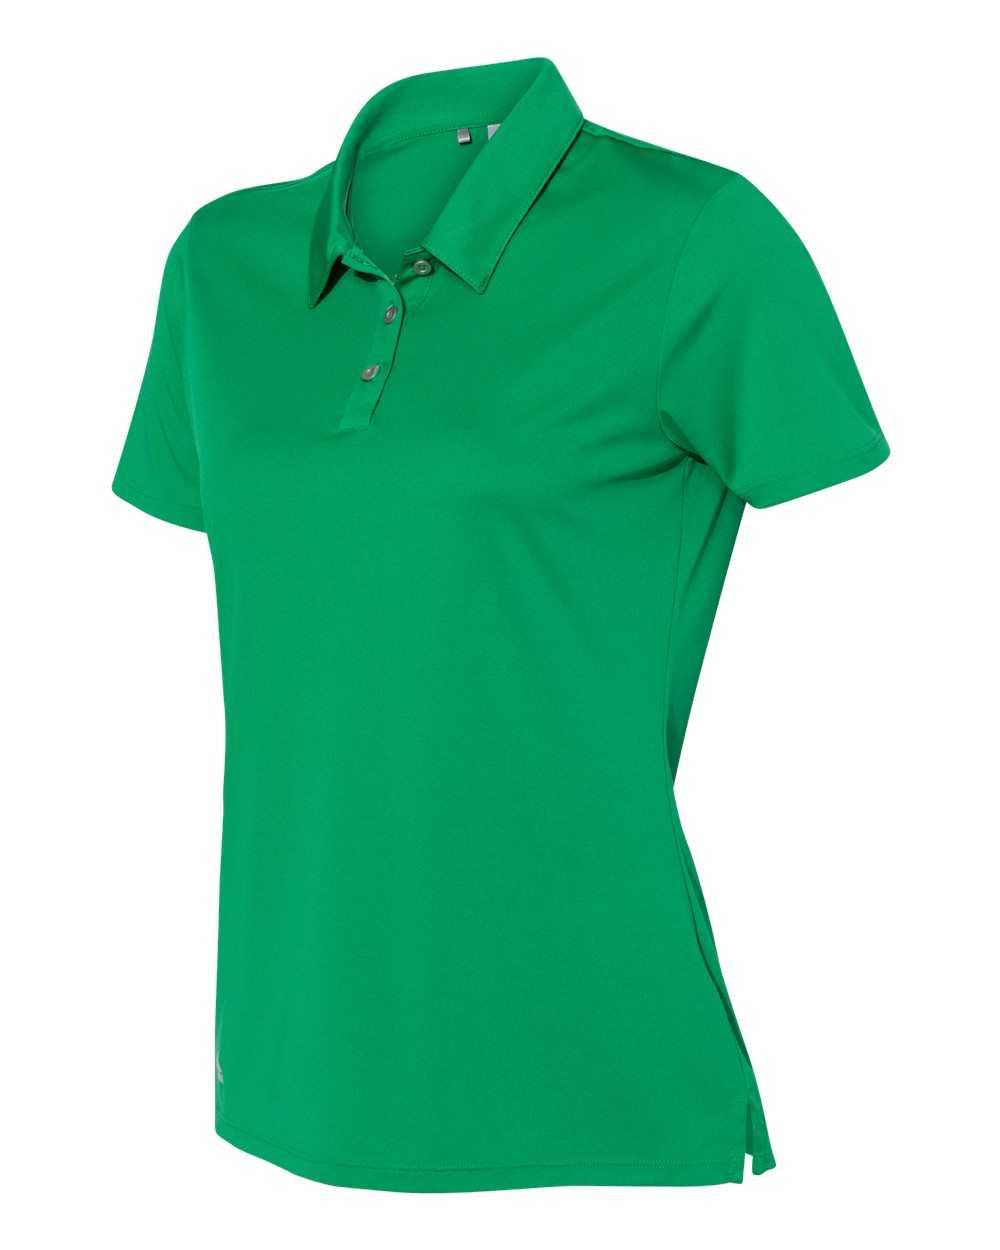 Adidas A231 Women&#39;s Performance Sport Shirt - Green - HIT a Double